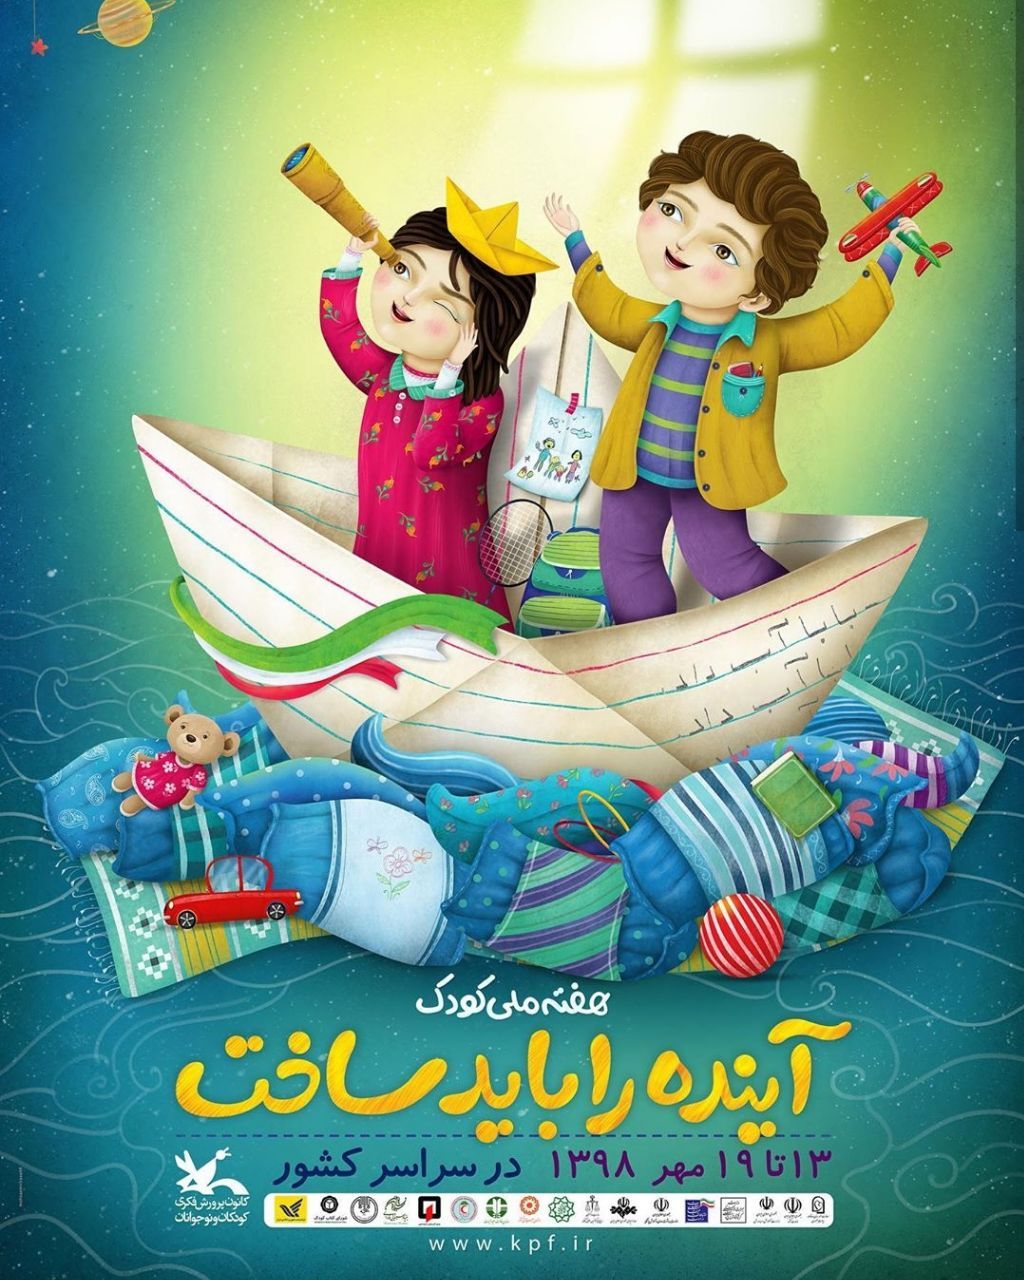 آغاز ویژه برنامه های هفته ملی کودک در خوزستان